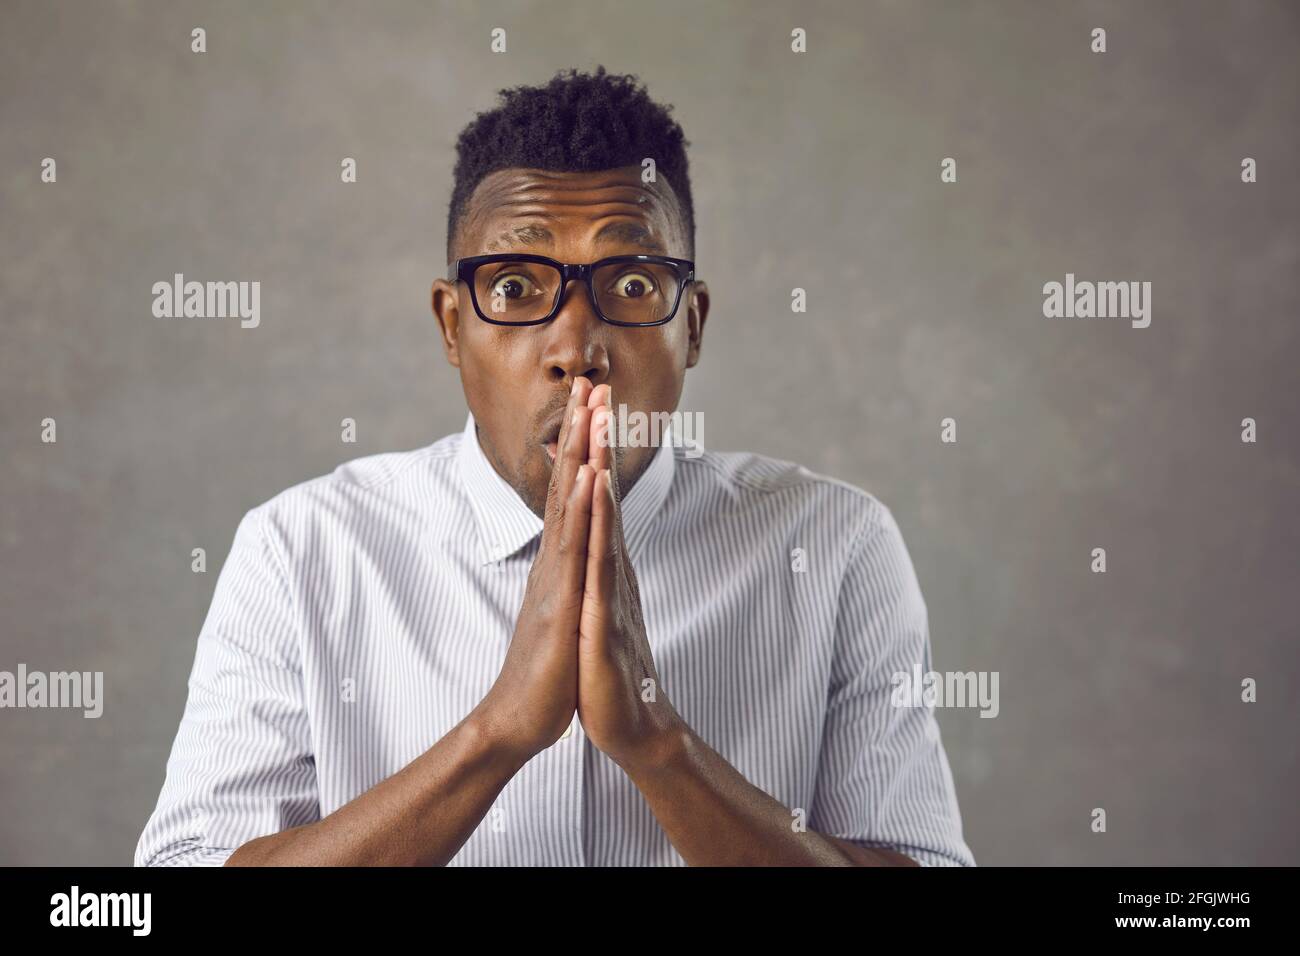 Estudio retrato del joven afroamericano conmocionado en gafas mirando la cámara Foto de stock